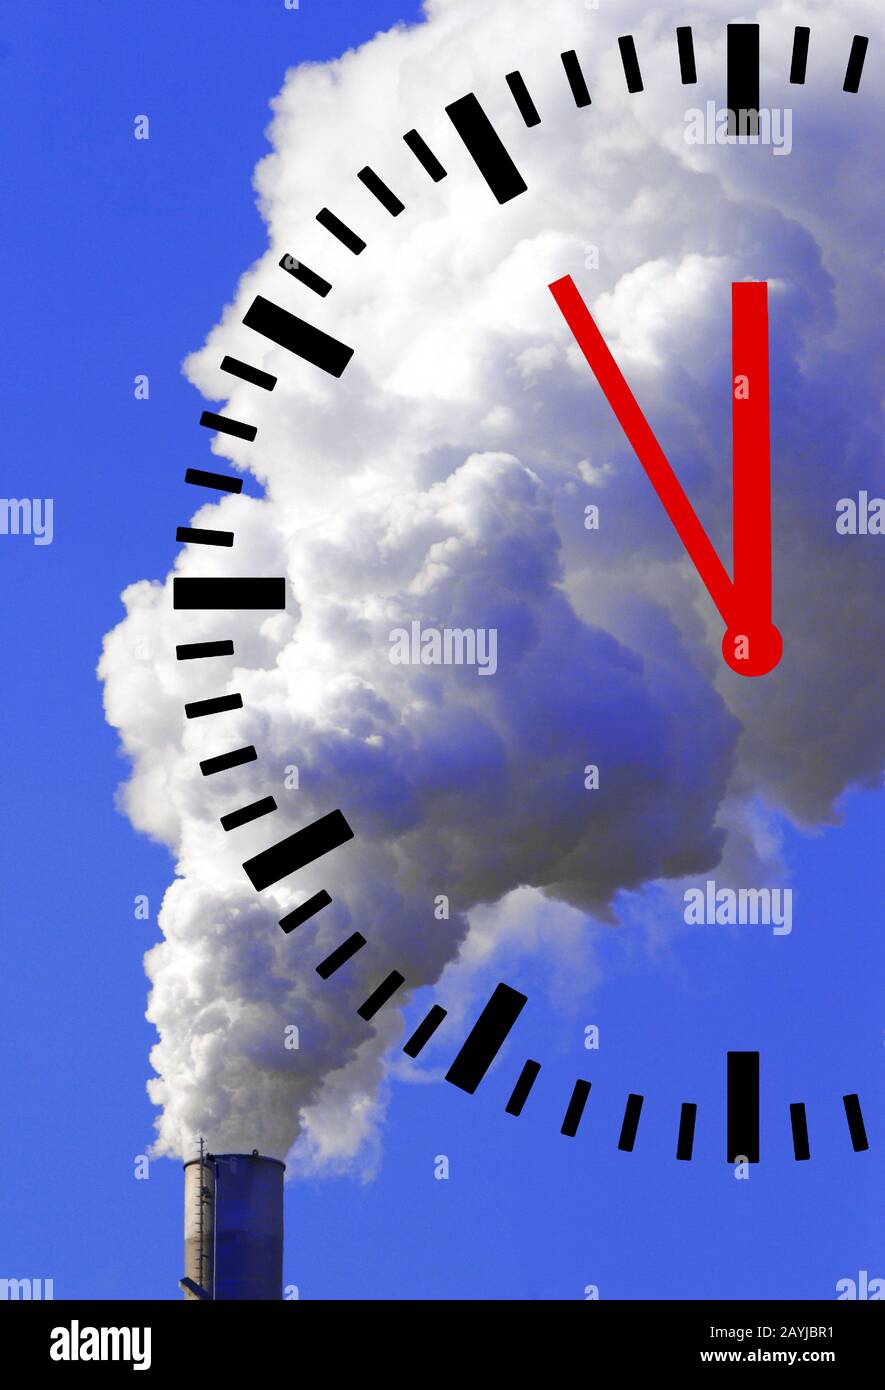 Pile fumeur, horloge affichant 5 pour 12, changement climatique, composition, Allemagne, Rhénanie-du-Nord-Westphalie Banque D'Images